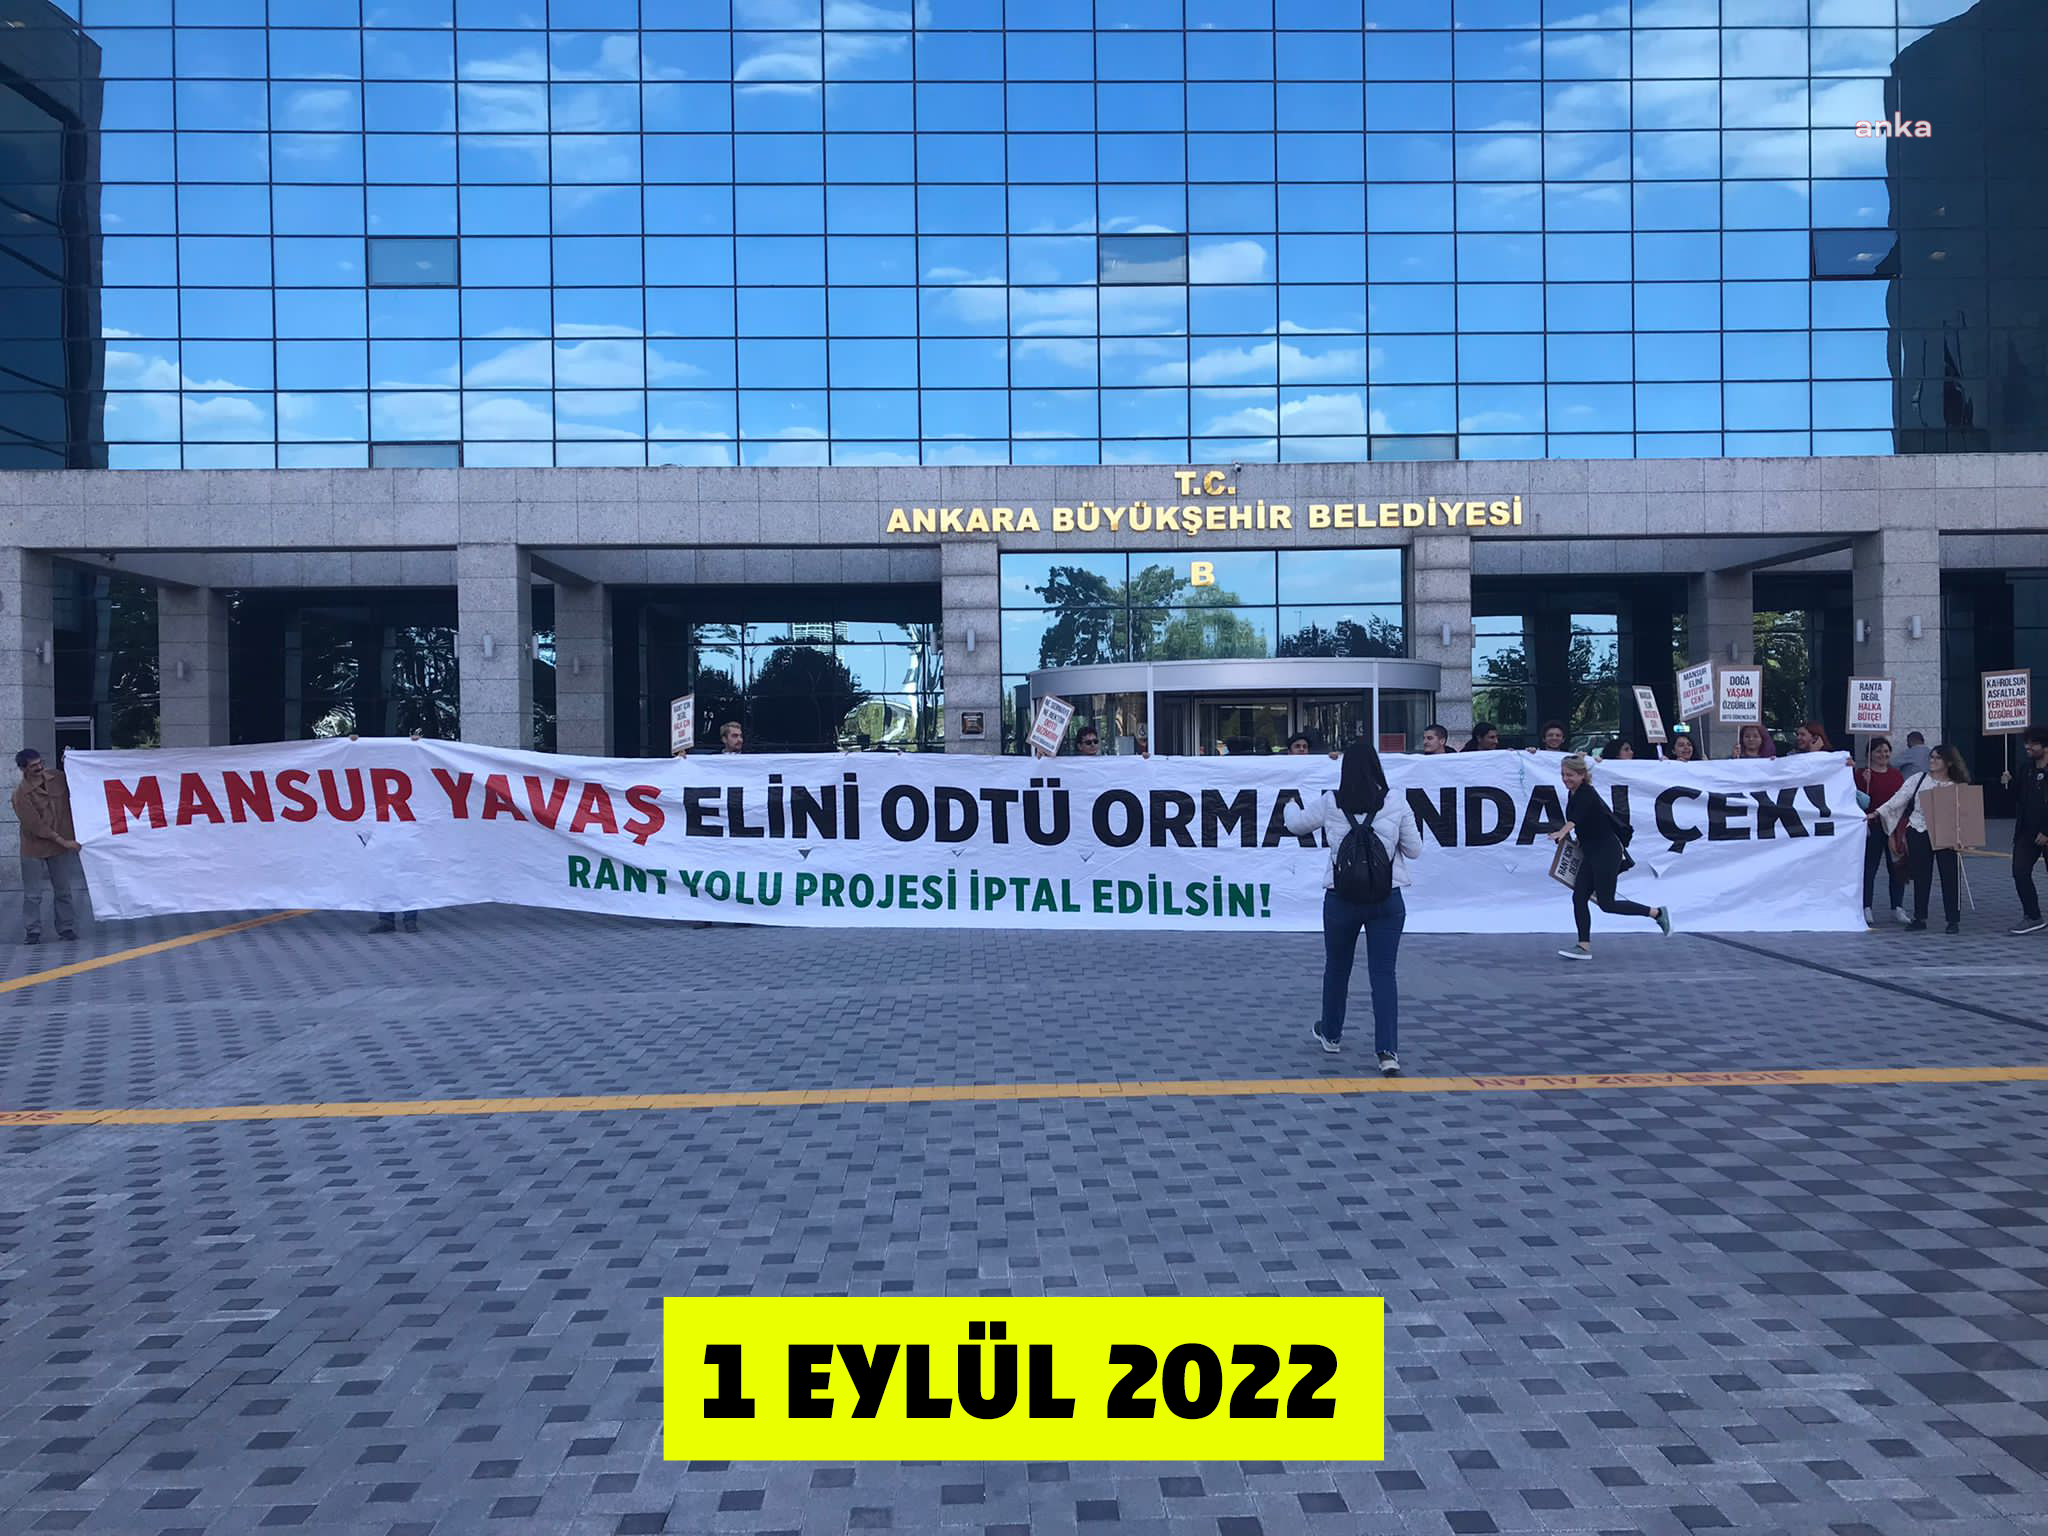 Ankara Büyükşehir Belediyesi: ODTÜ arazisinde bir çalışma yok